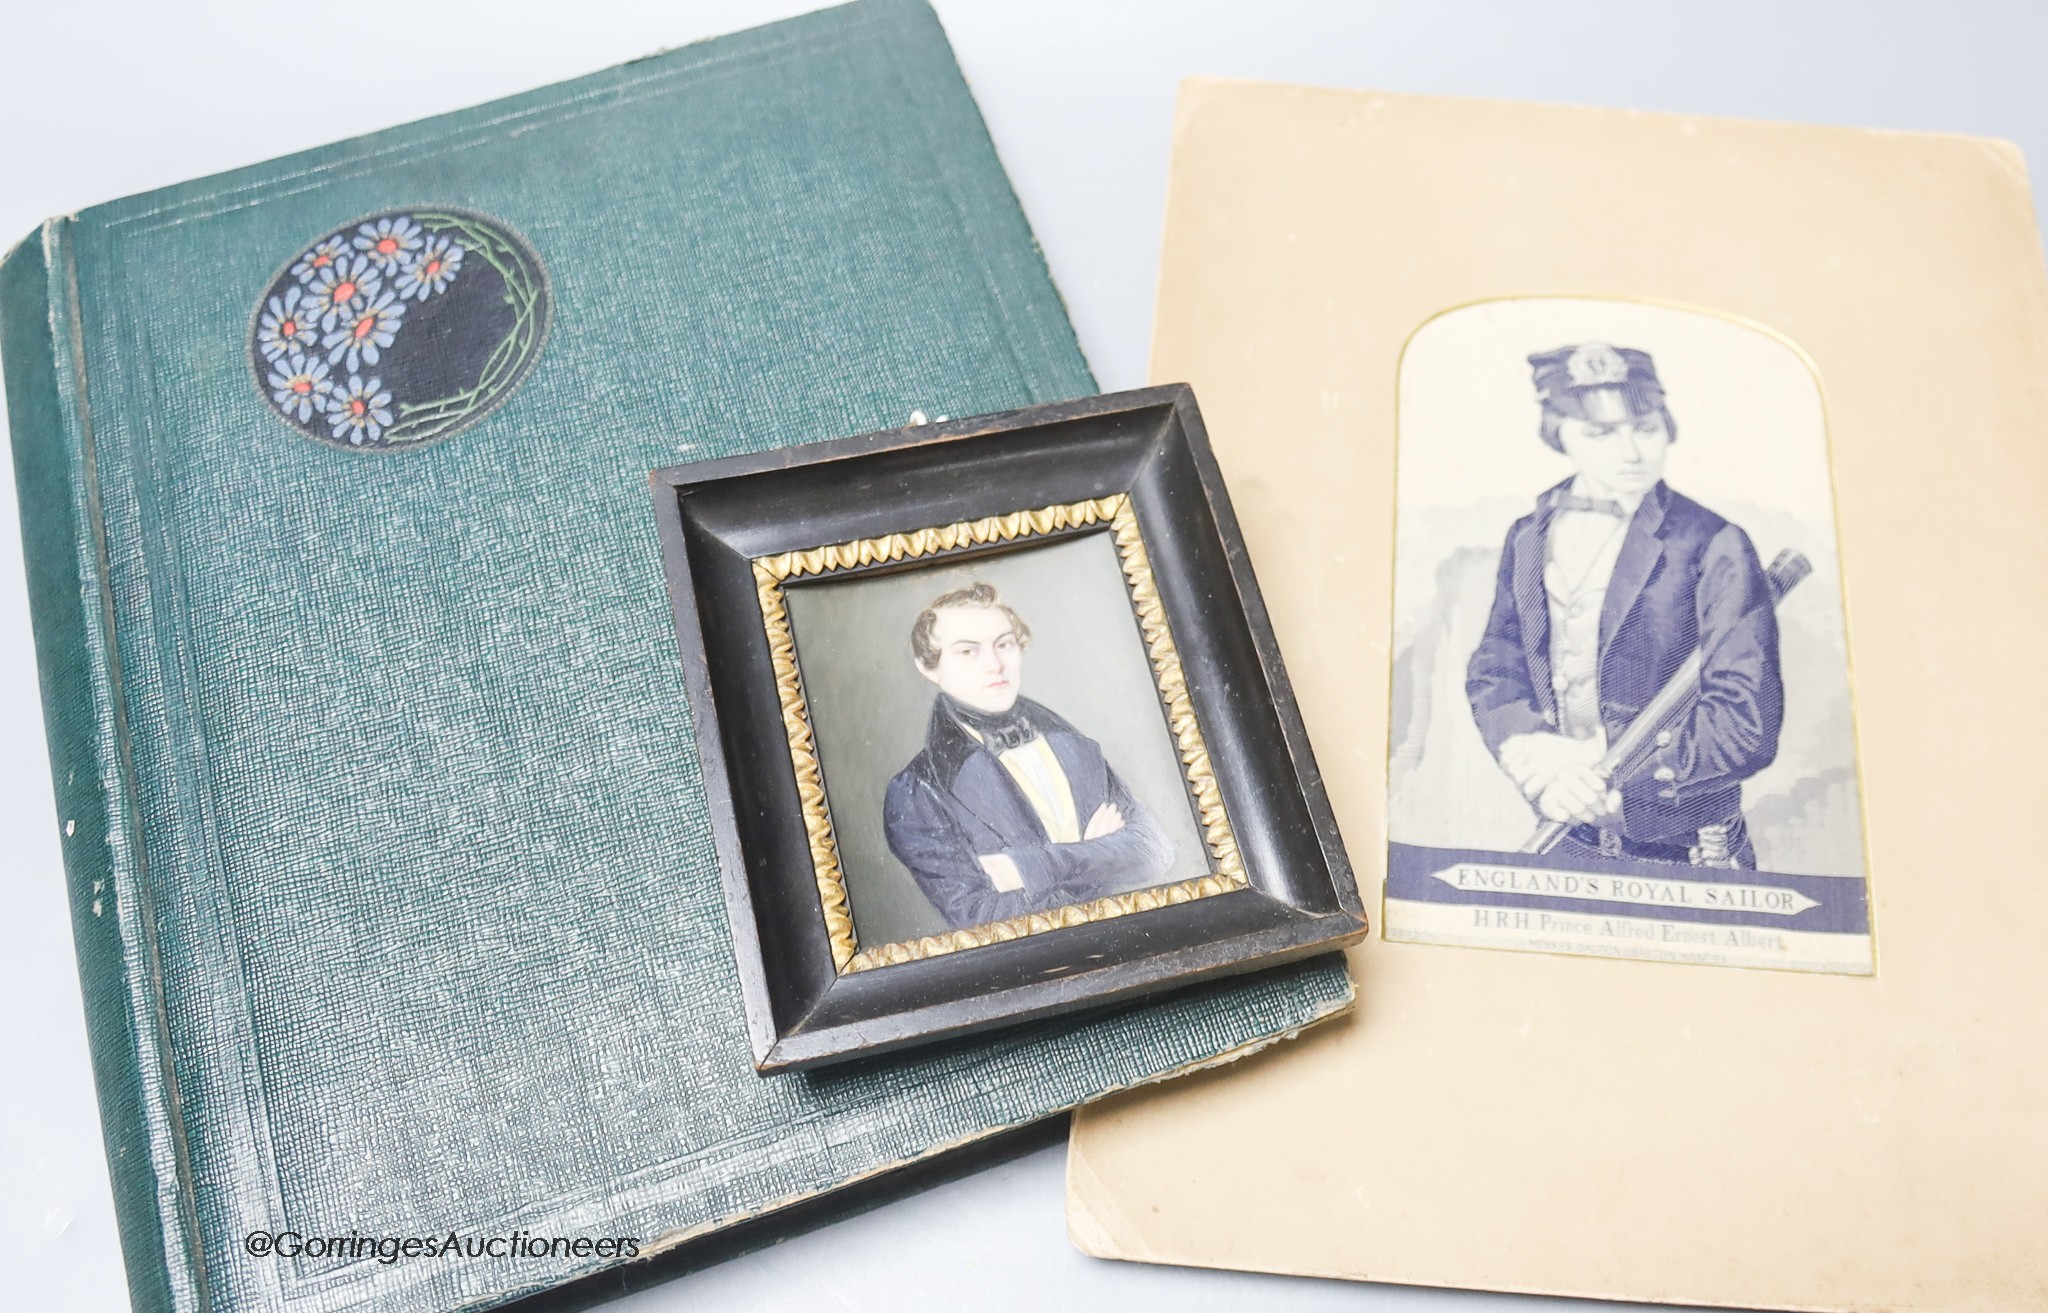 A Stevenograph type portrait album of Royals postcards and a Victorian portrait miniature